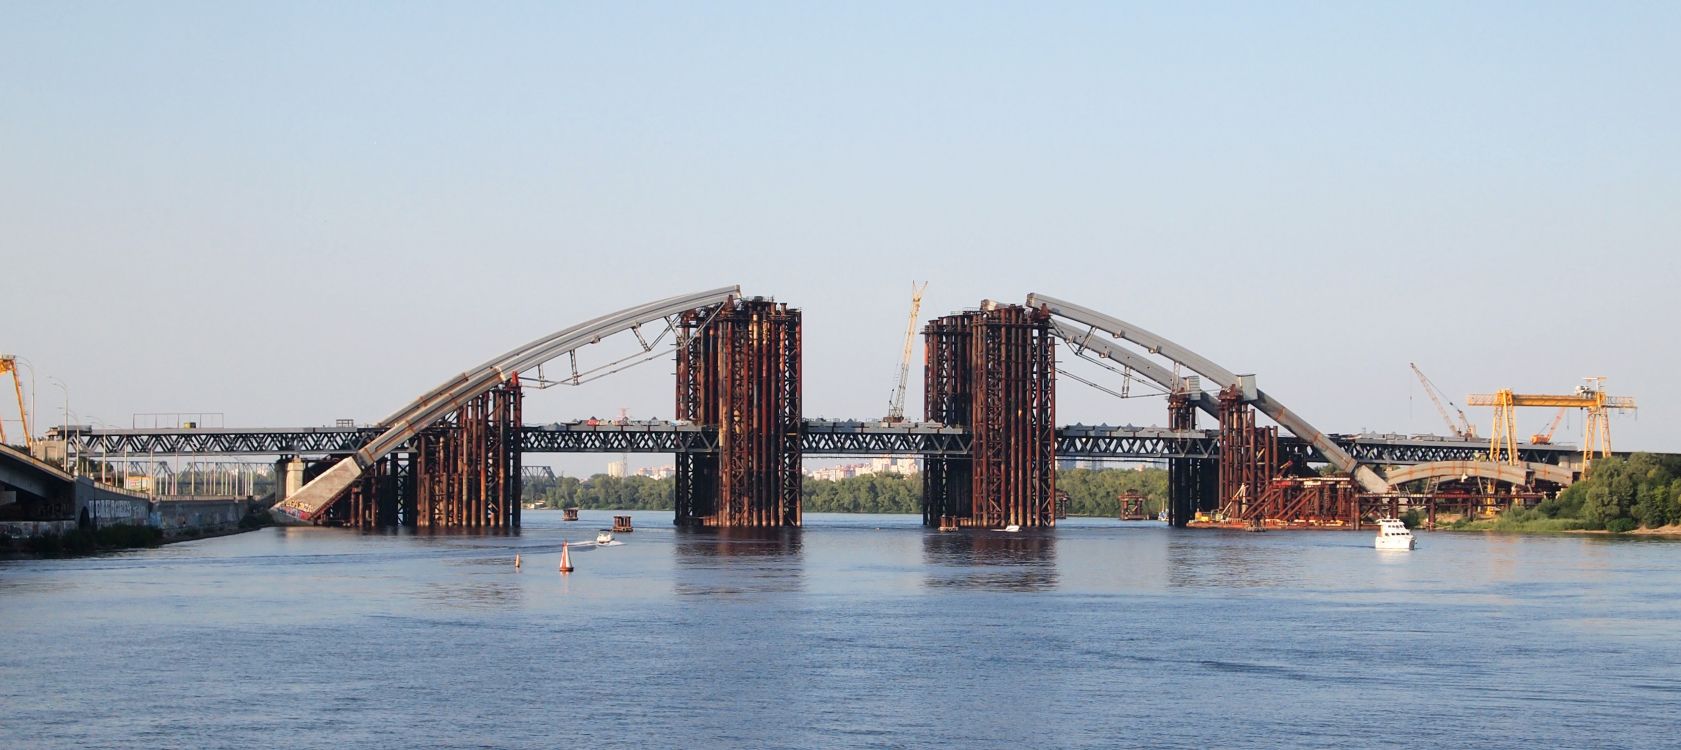 建设, 悬臂桥, 桁架桥, 工程, 拱桥 壁纸 3390x1512 允许